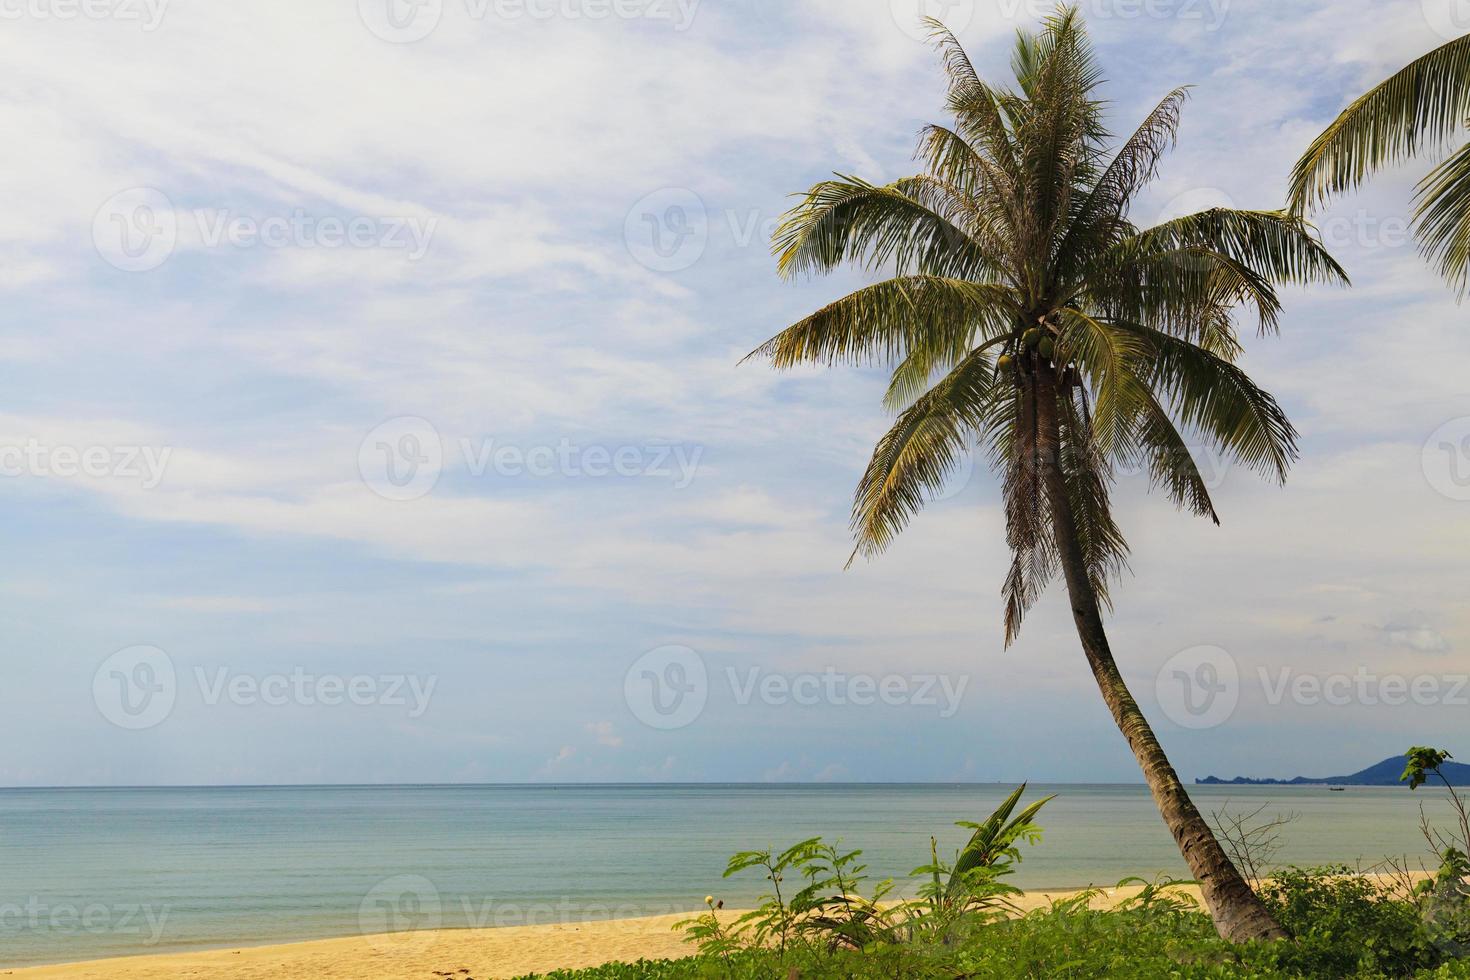 hermosa playa tropical en tailandia foto